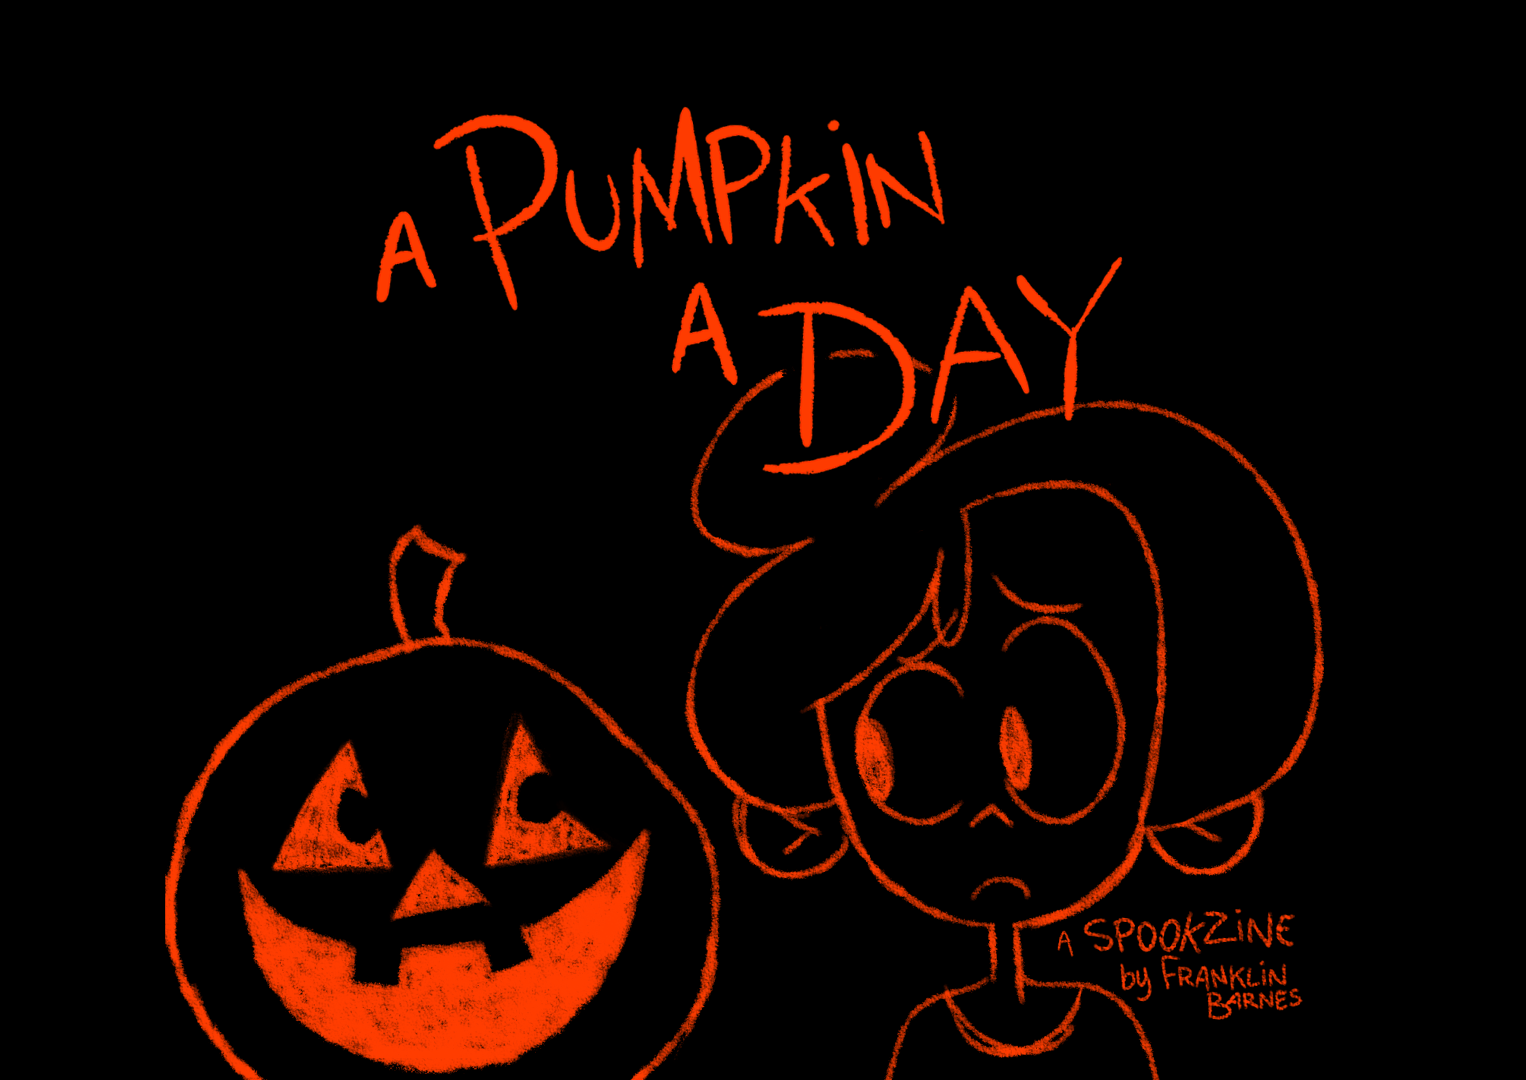 A Pumpkin a Day